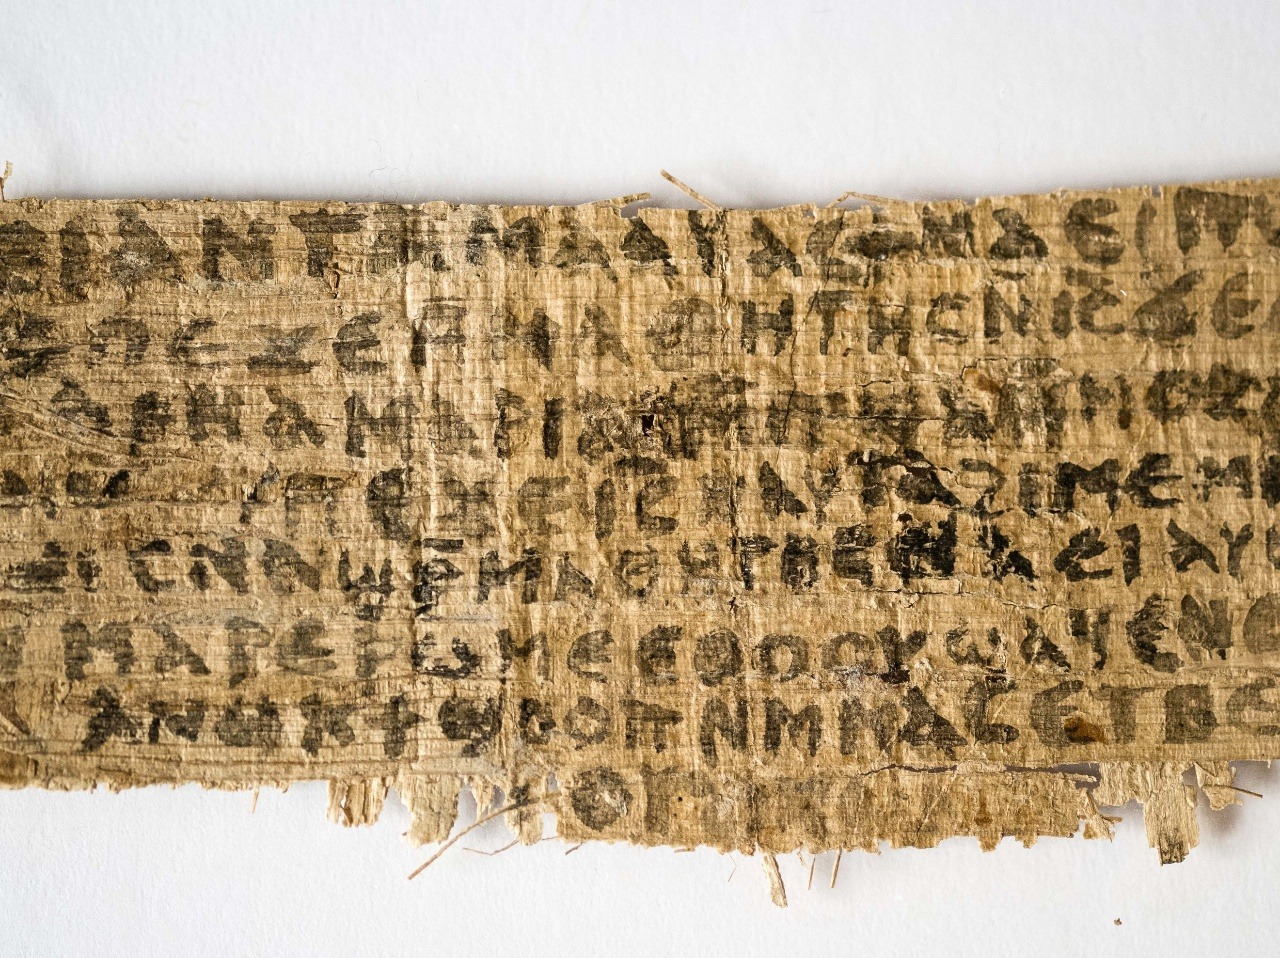 Papyrus, ktorý obsahuje slová o Ježišovej žene, nie je podľa vedcov podvrh